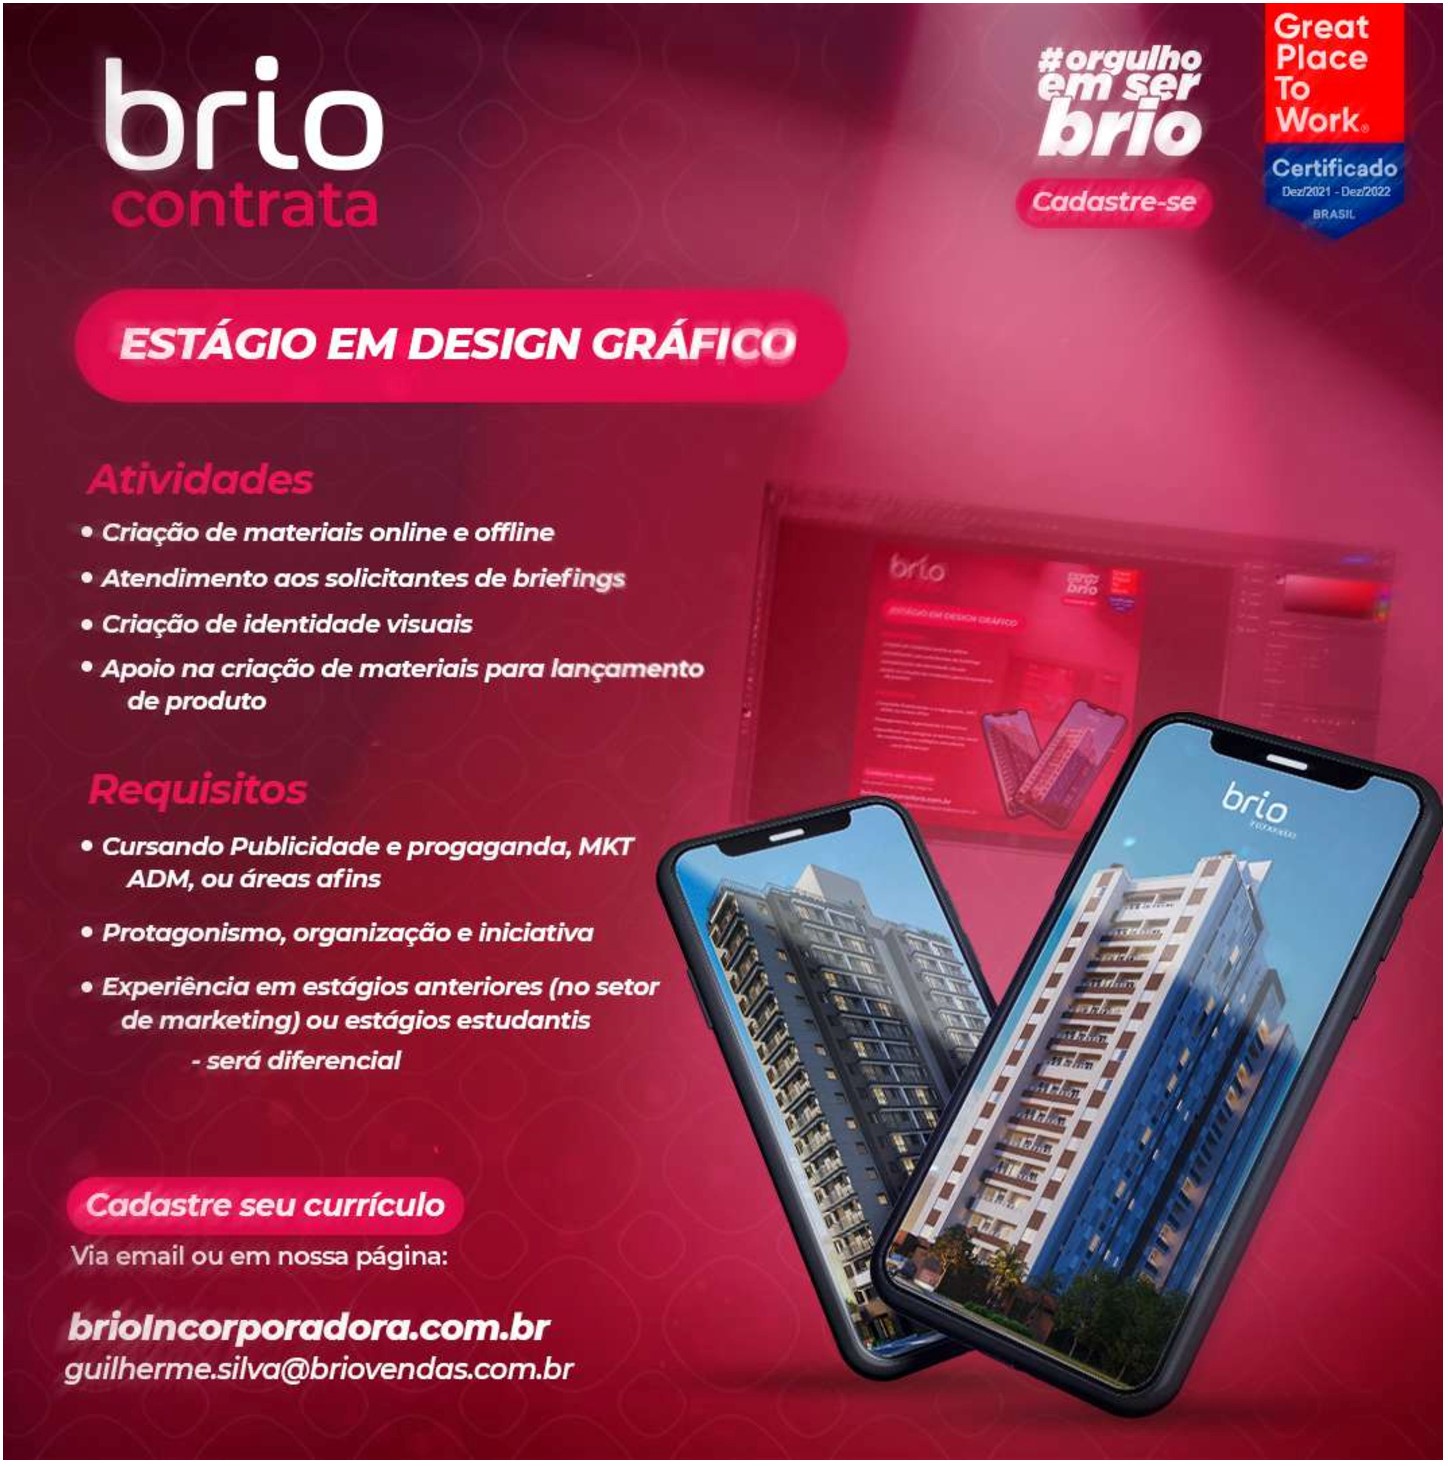 Brio_Design_compressed.jpg